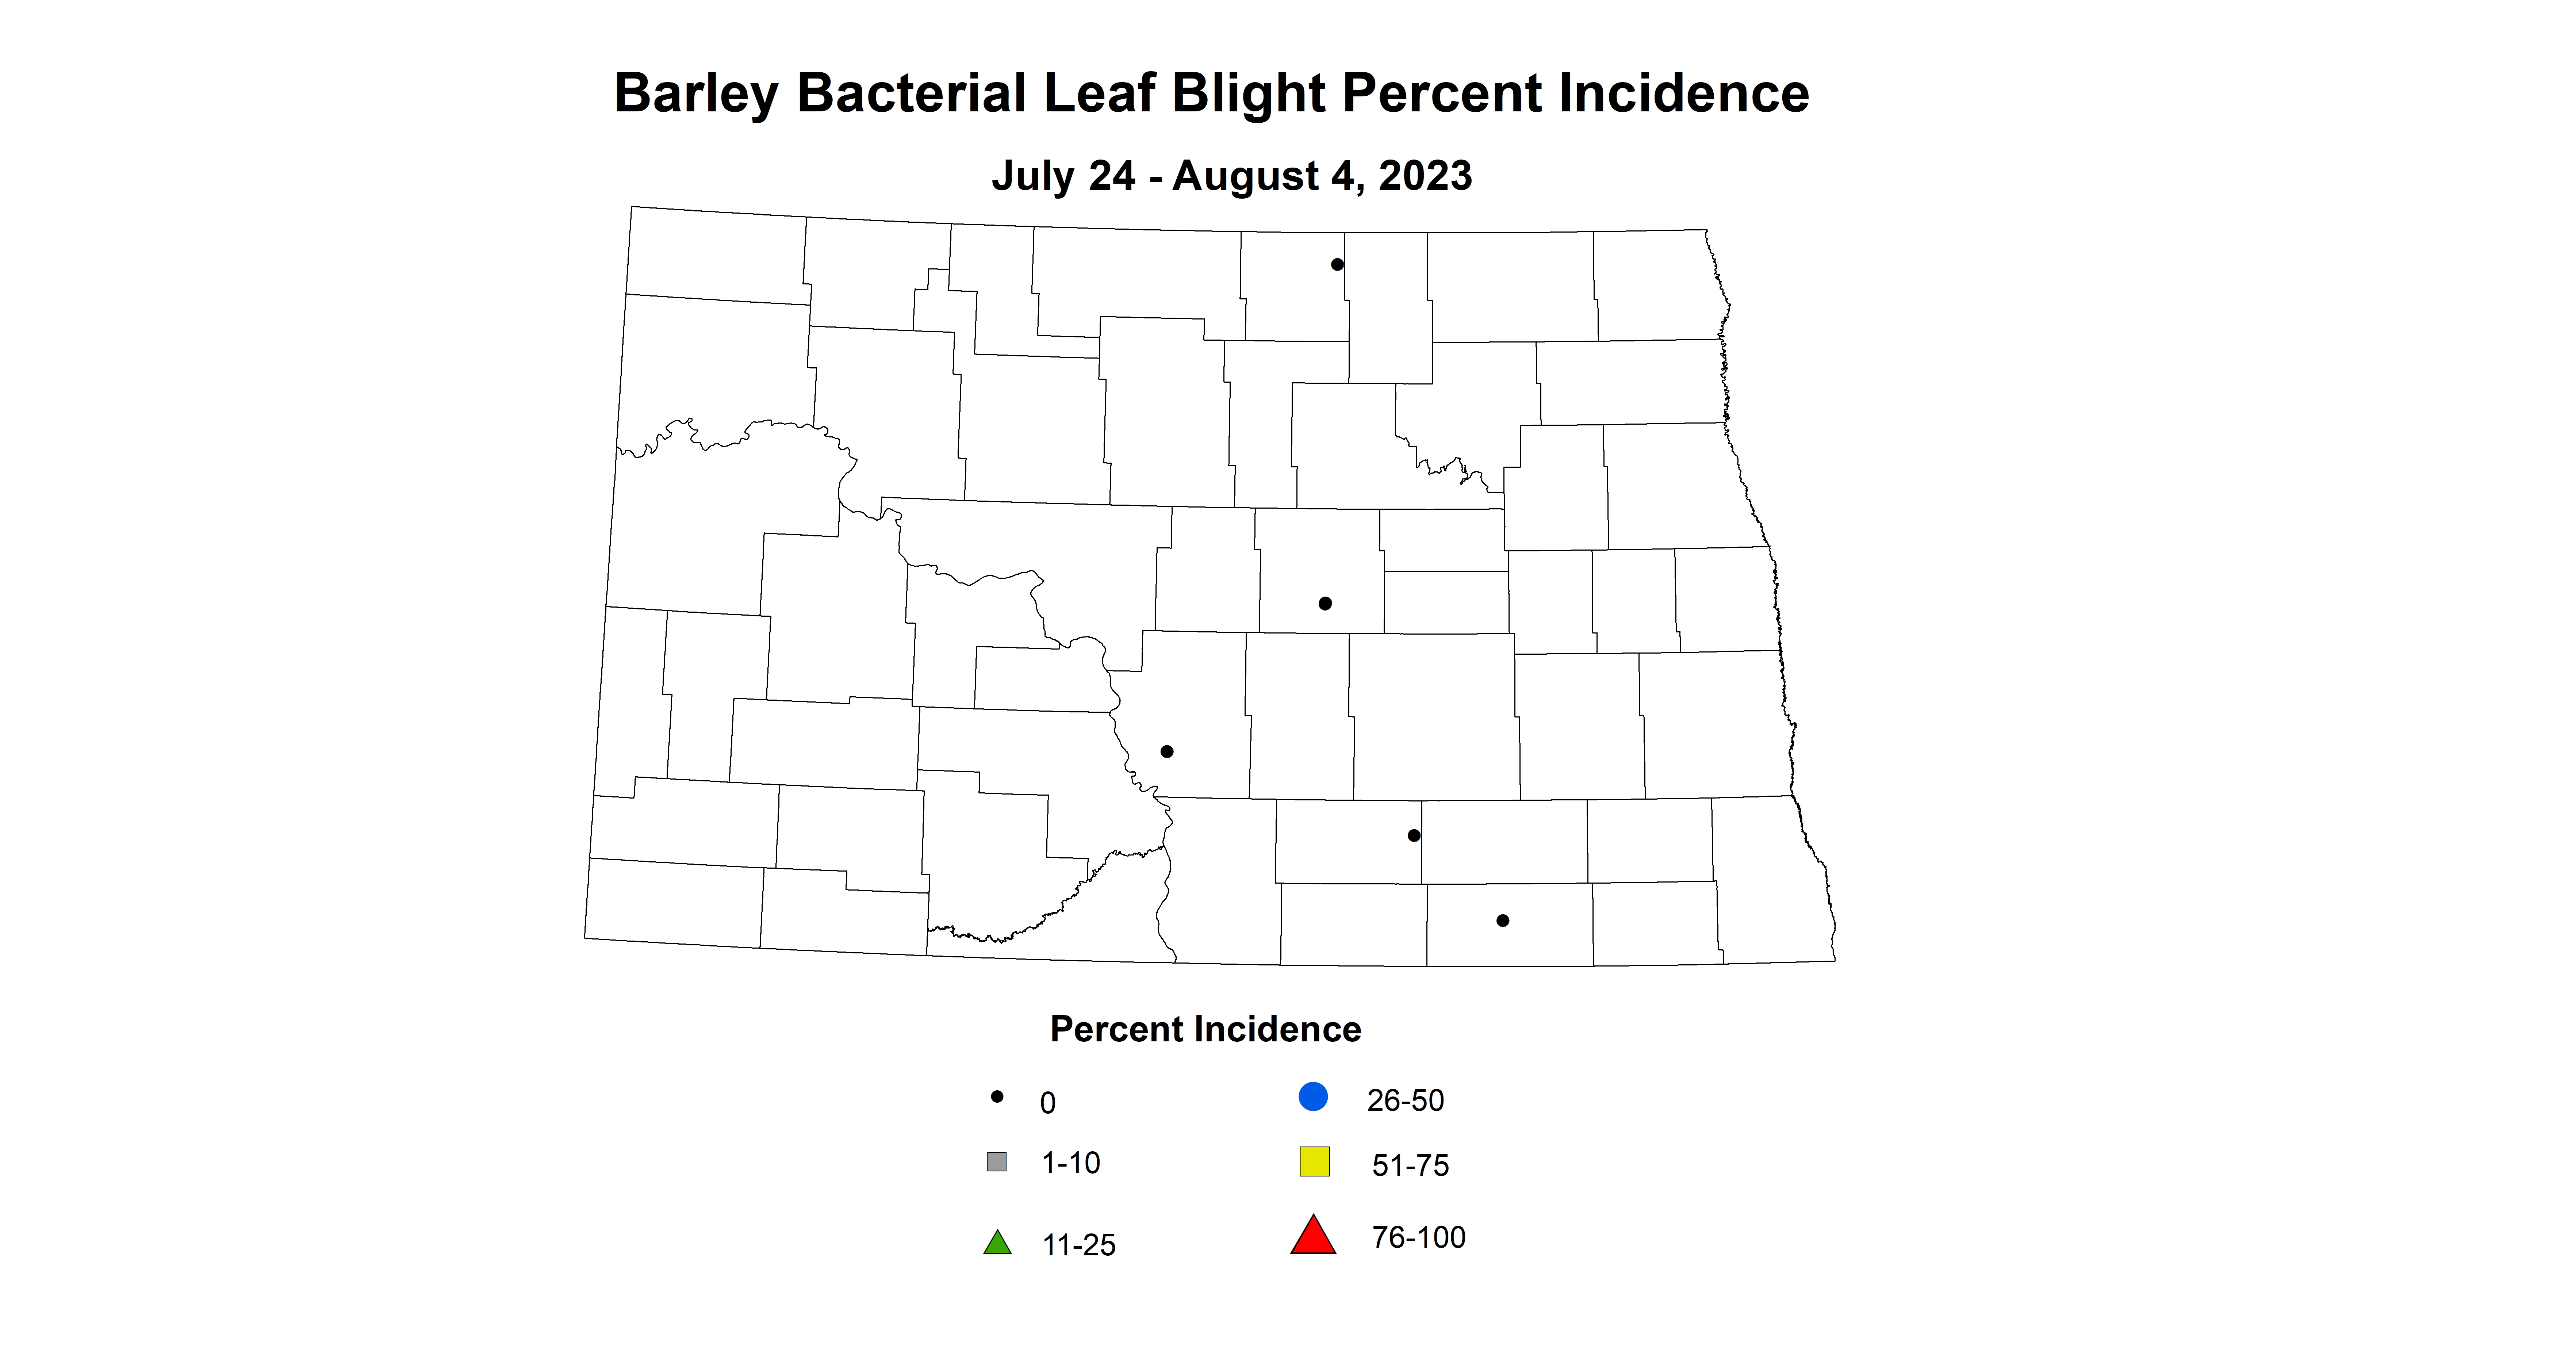 barley baterial leaf blight incidence 7.24-8.4 2023